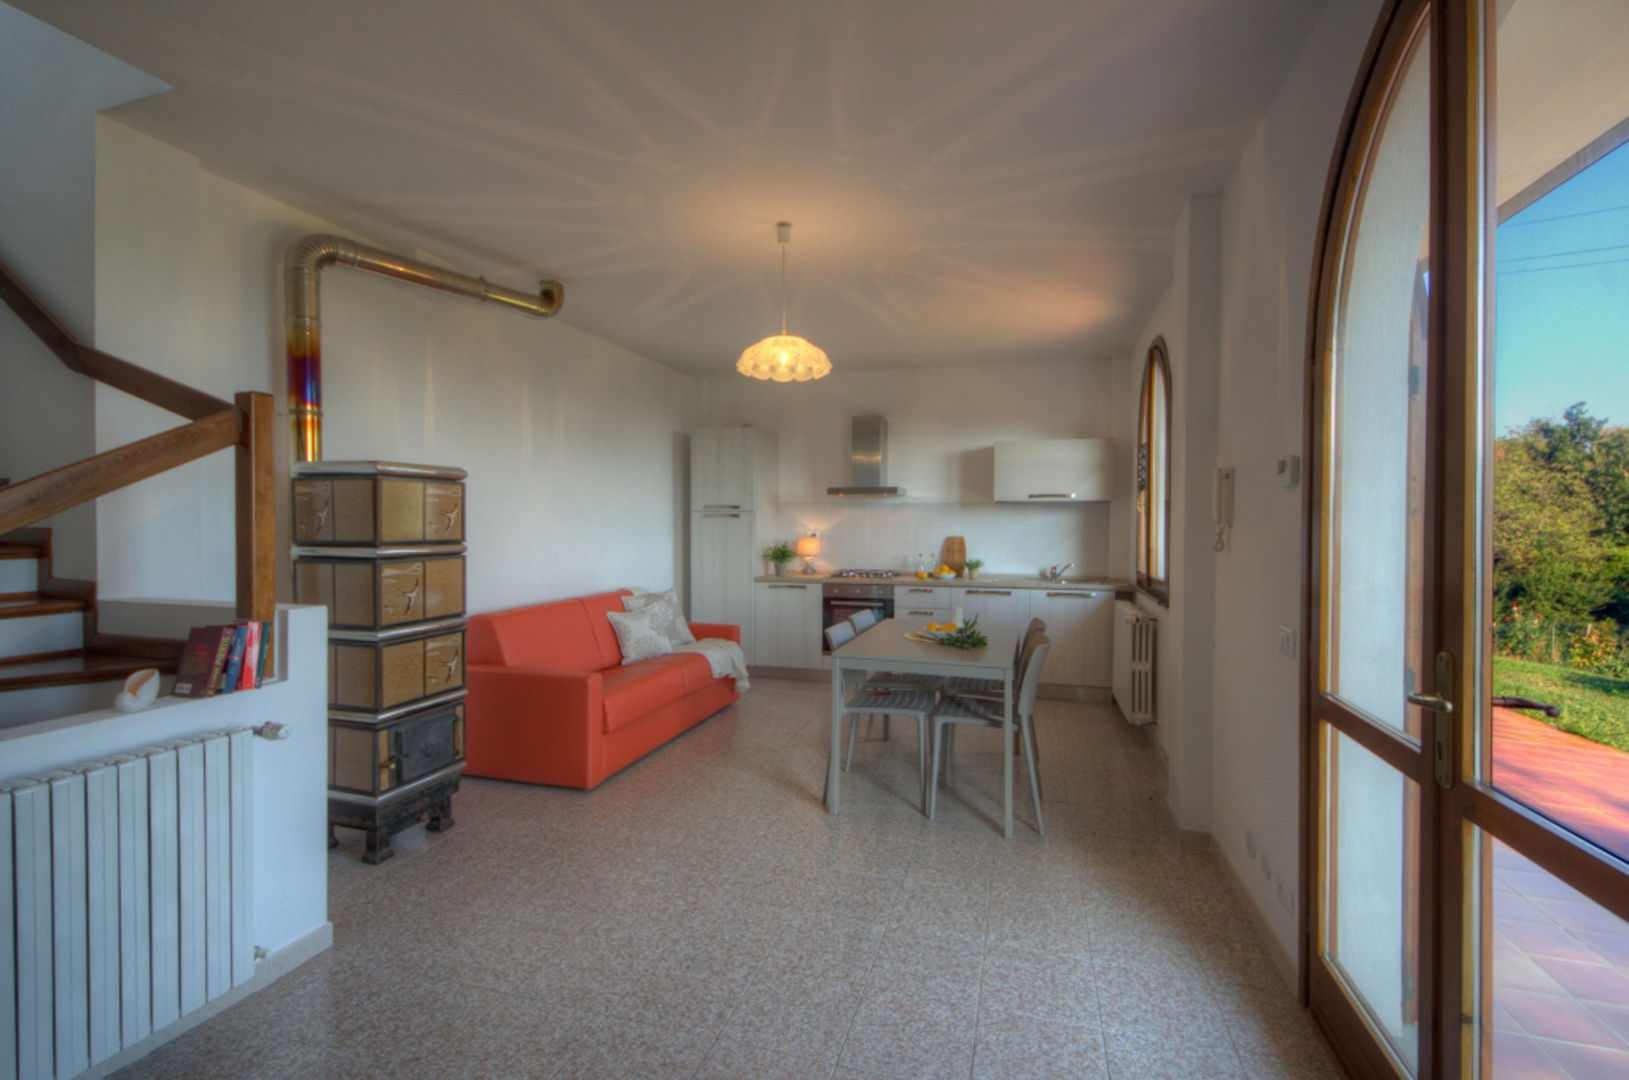 Villa, Emilio Rescigno - Fotografia Immobiliare Emilio Rescigno - Fotografia Immobiliare Modern dining room Tables